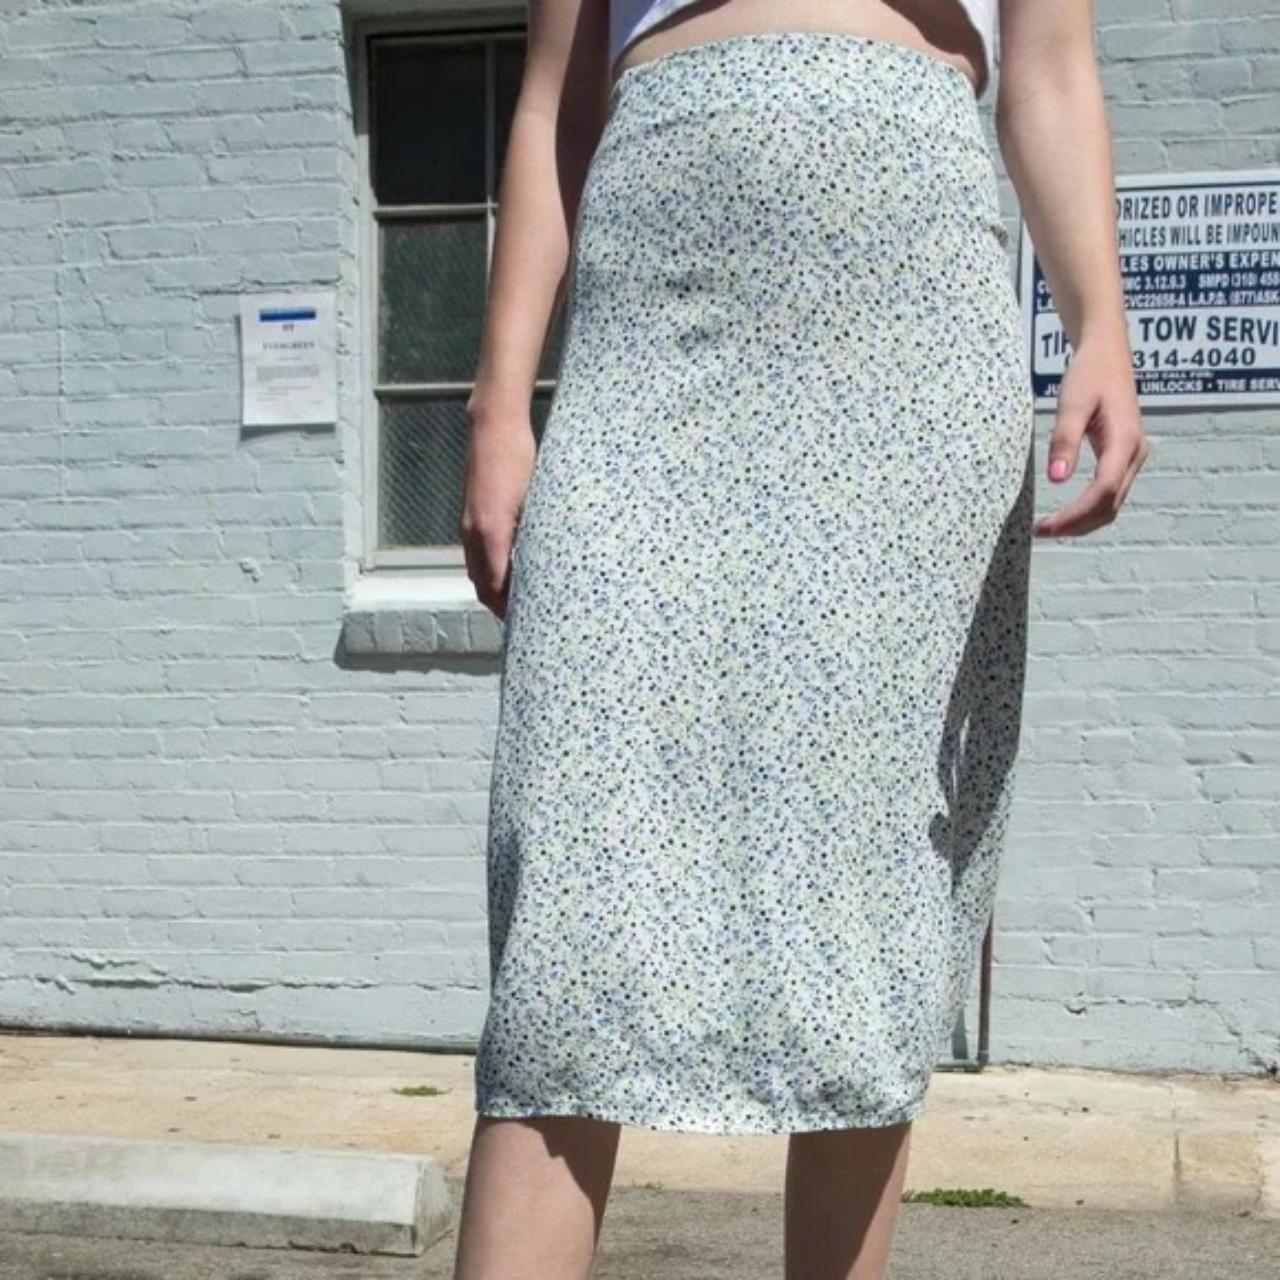 Brandy Melville Women's Blue and White Skirt (5)